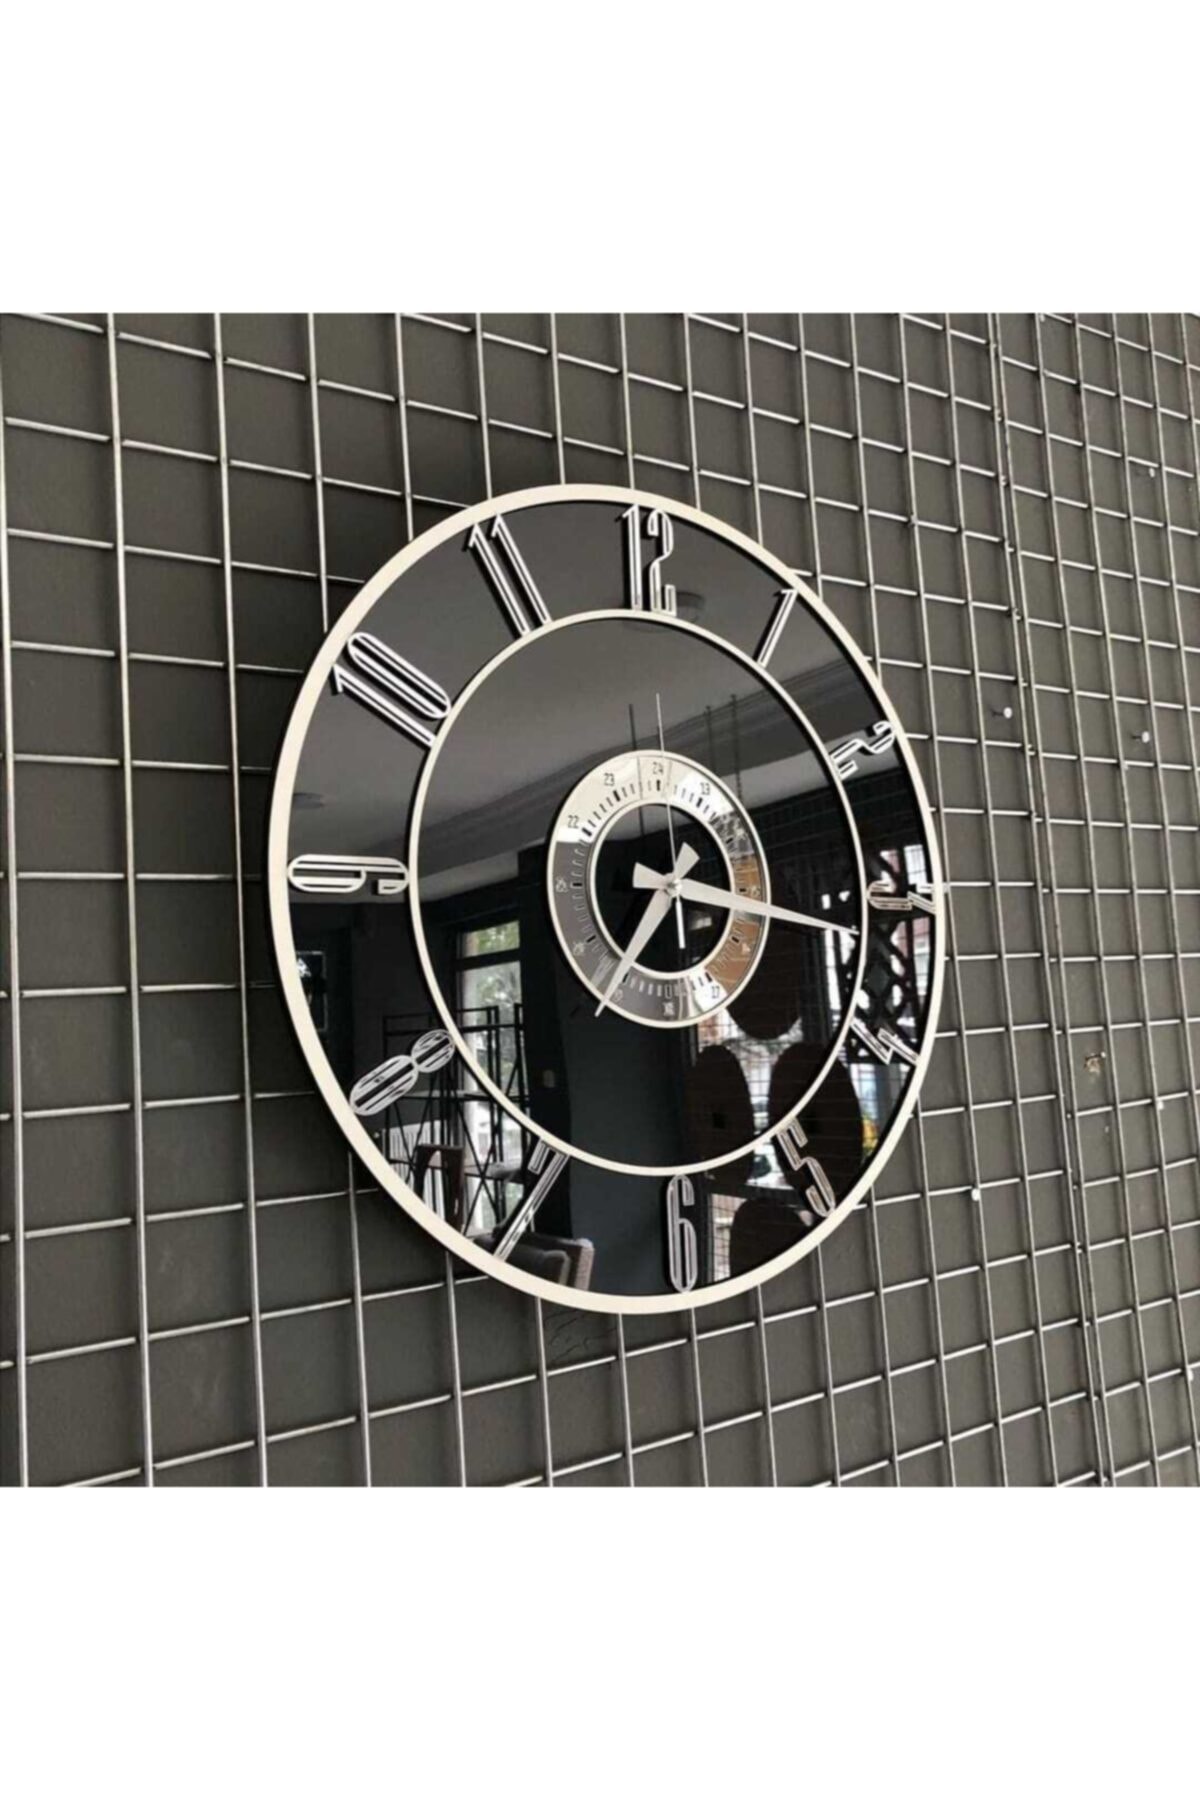 Kuzata Beyaz Çıtalı Siyah Ayna Üzerine Gümüş Türkçe Rakam Duvar Saati-50 cm